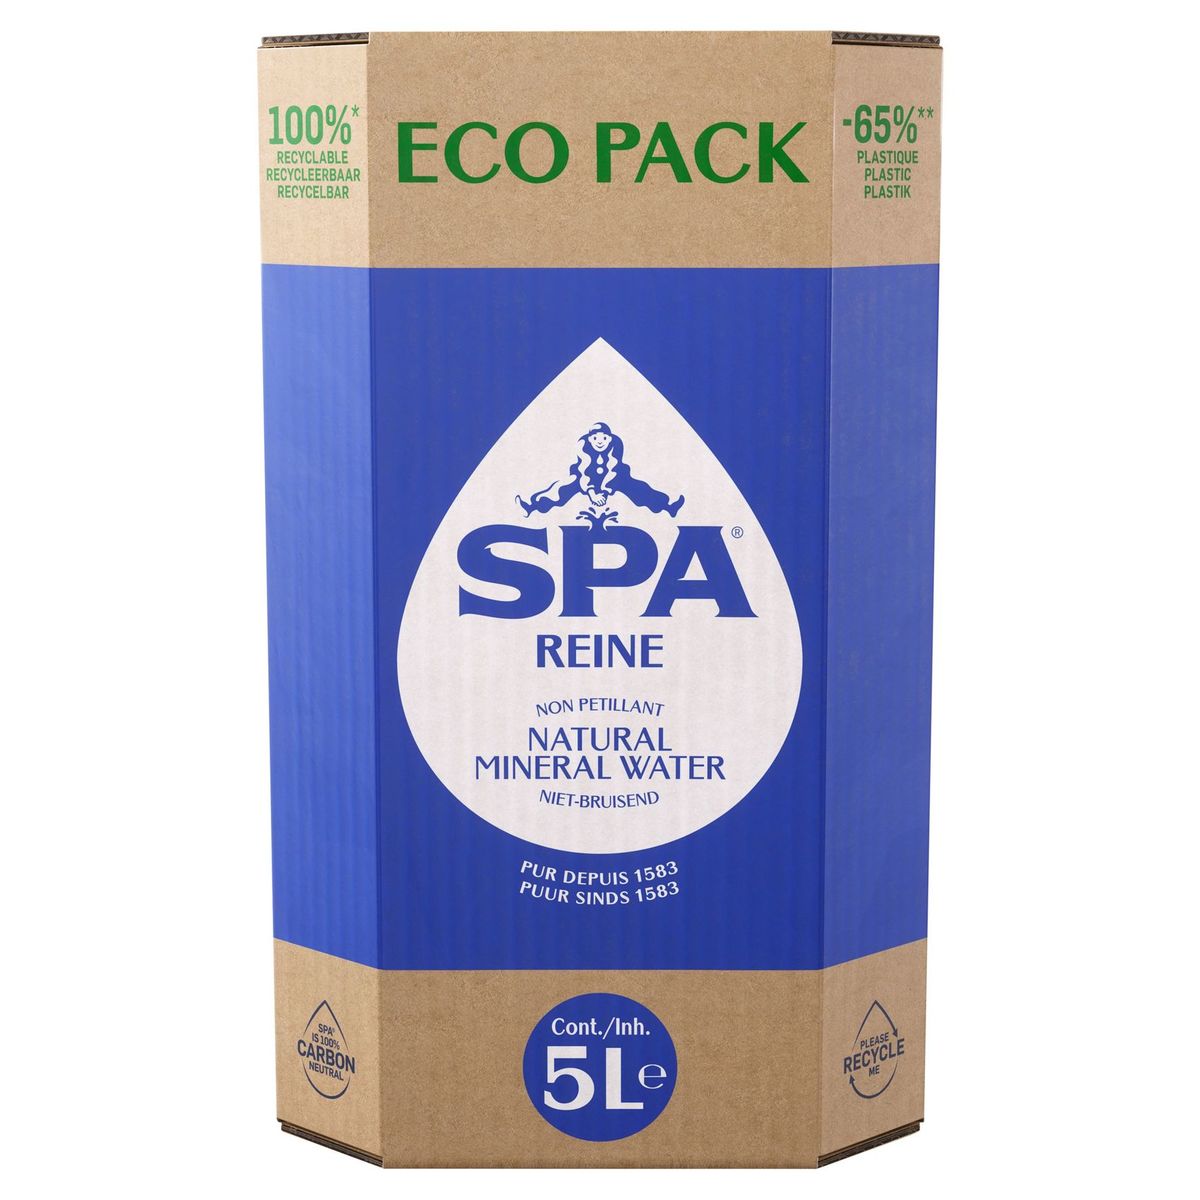 SPA REINE Natuurlijk Mineraalwater Eco Pack 5L